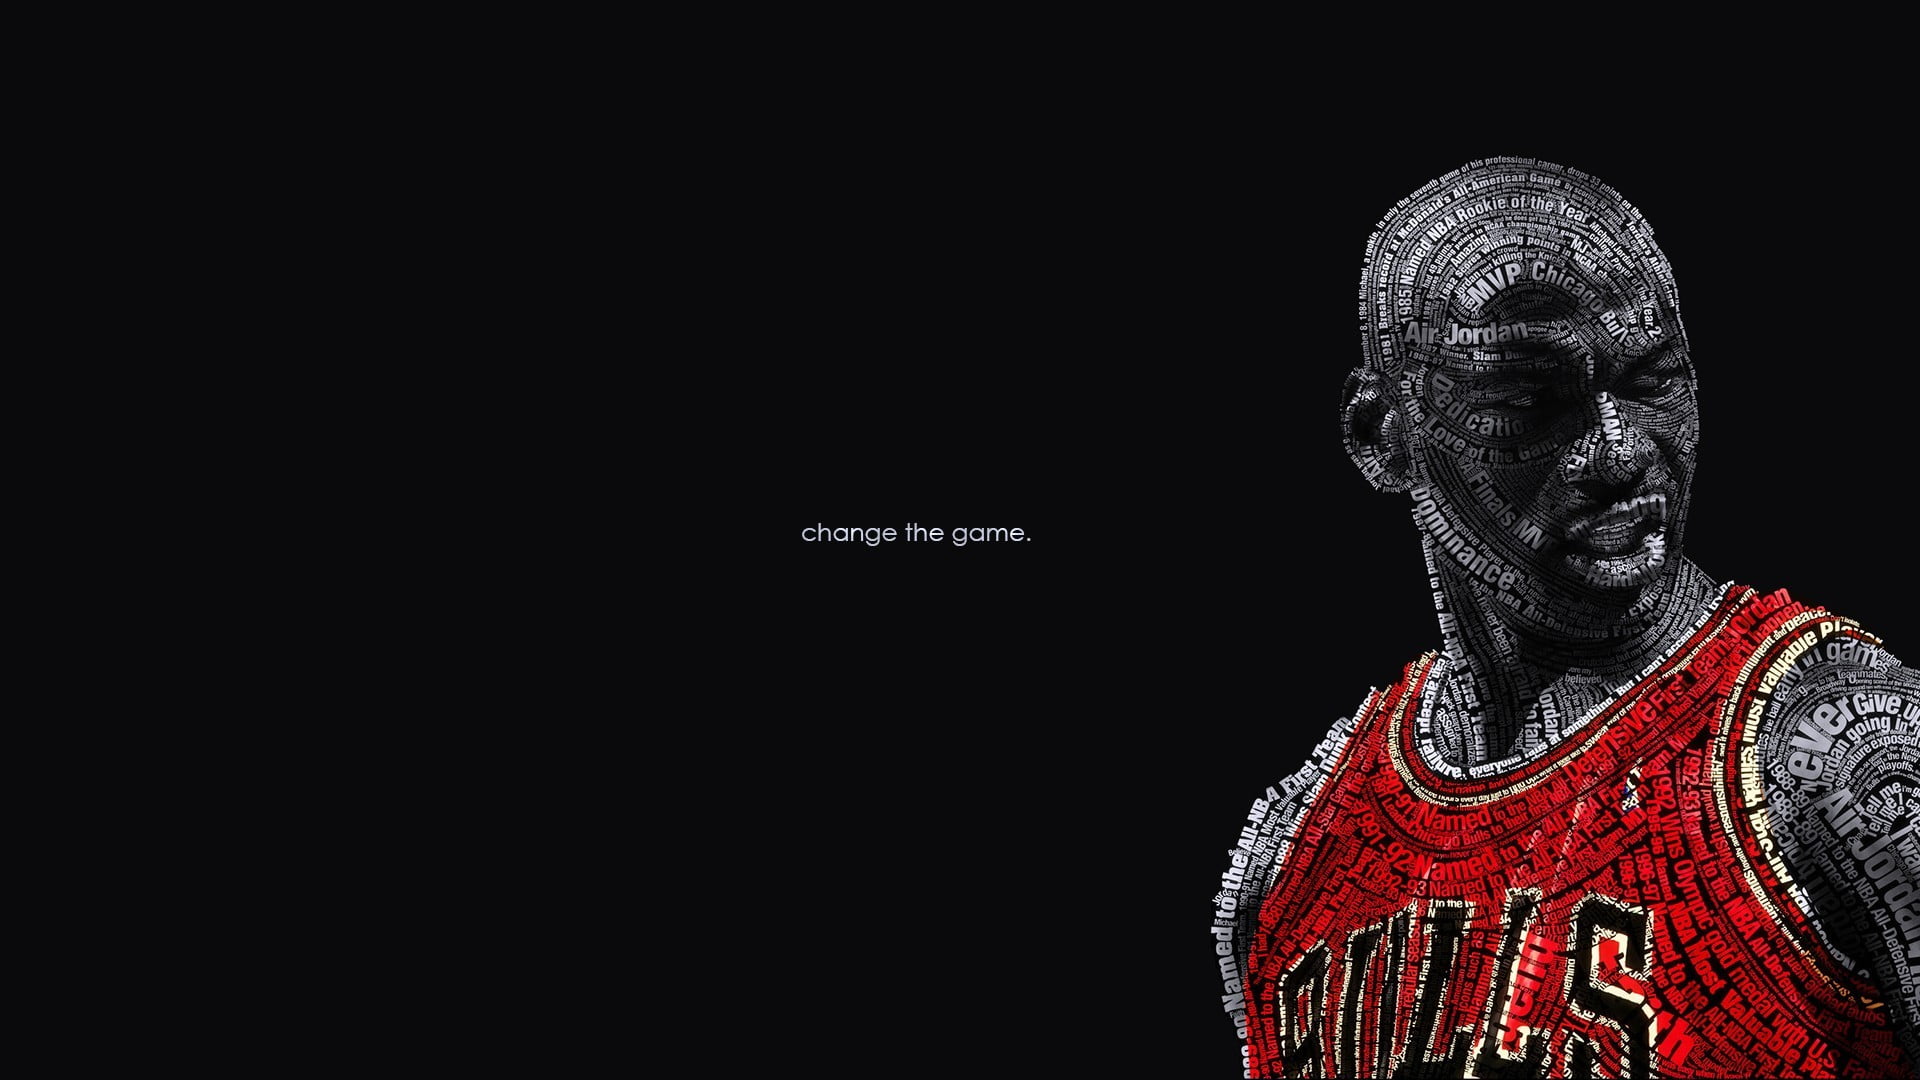 Michael Jordan wallpaper, human representation, clothing, people